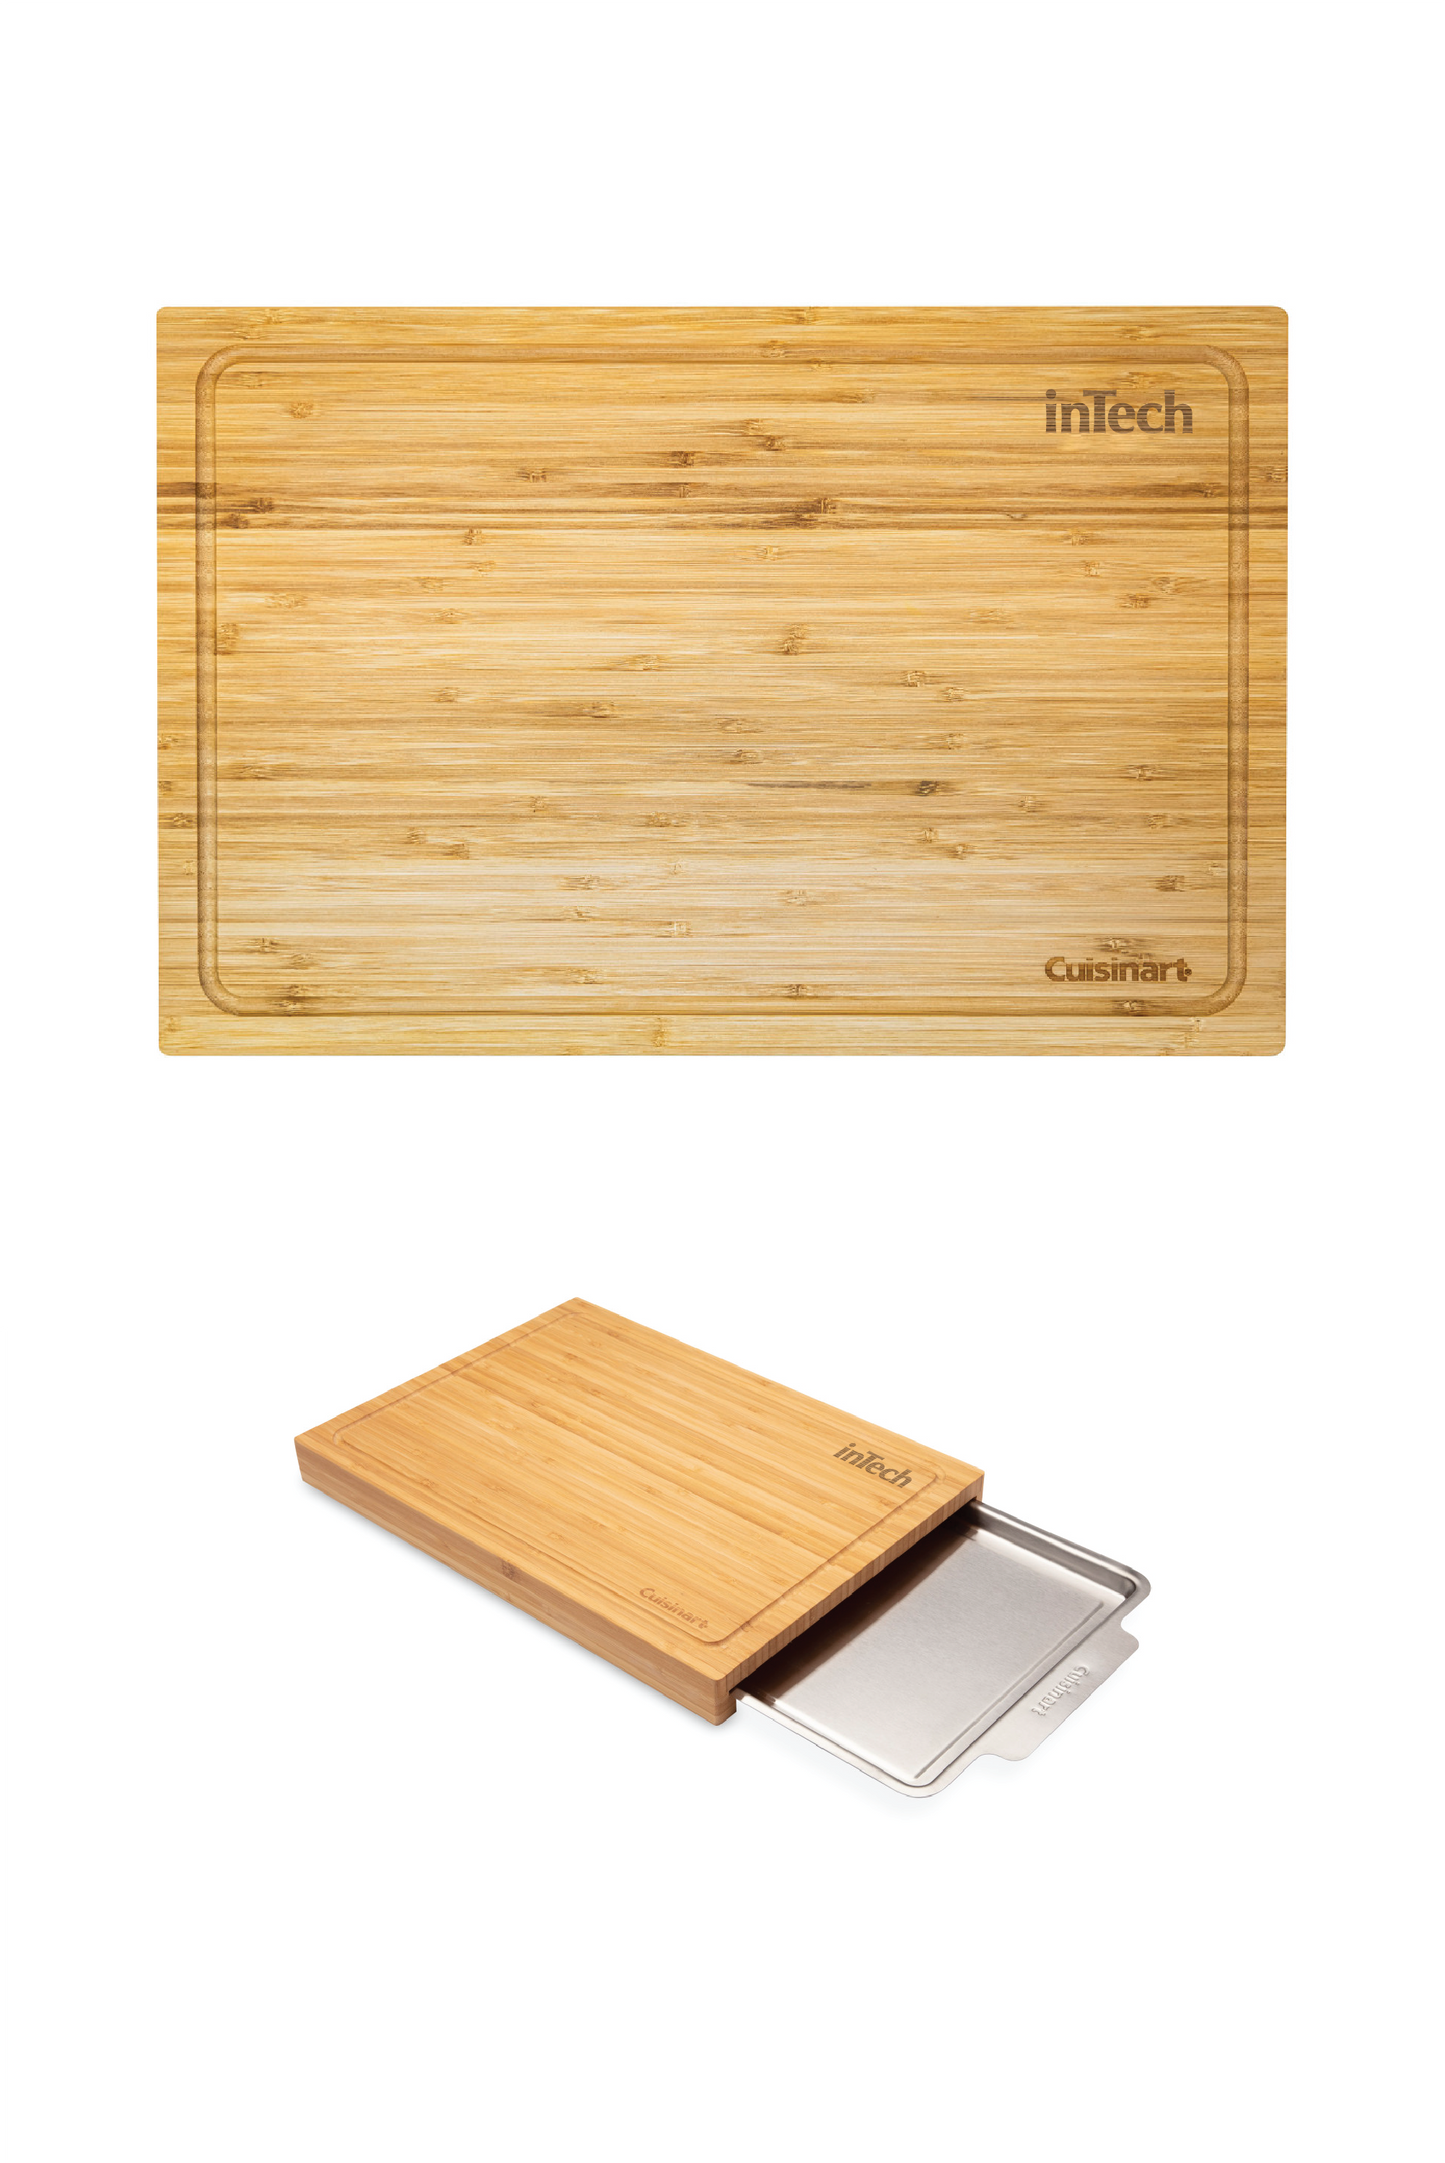 101459-231 Cuisinart Bamboo Cutting Board With Hidden Tray